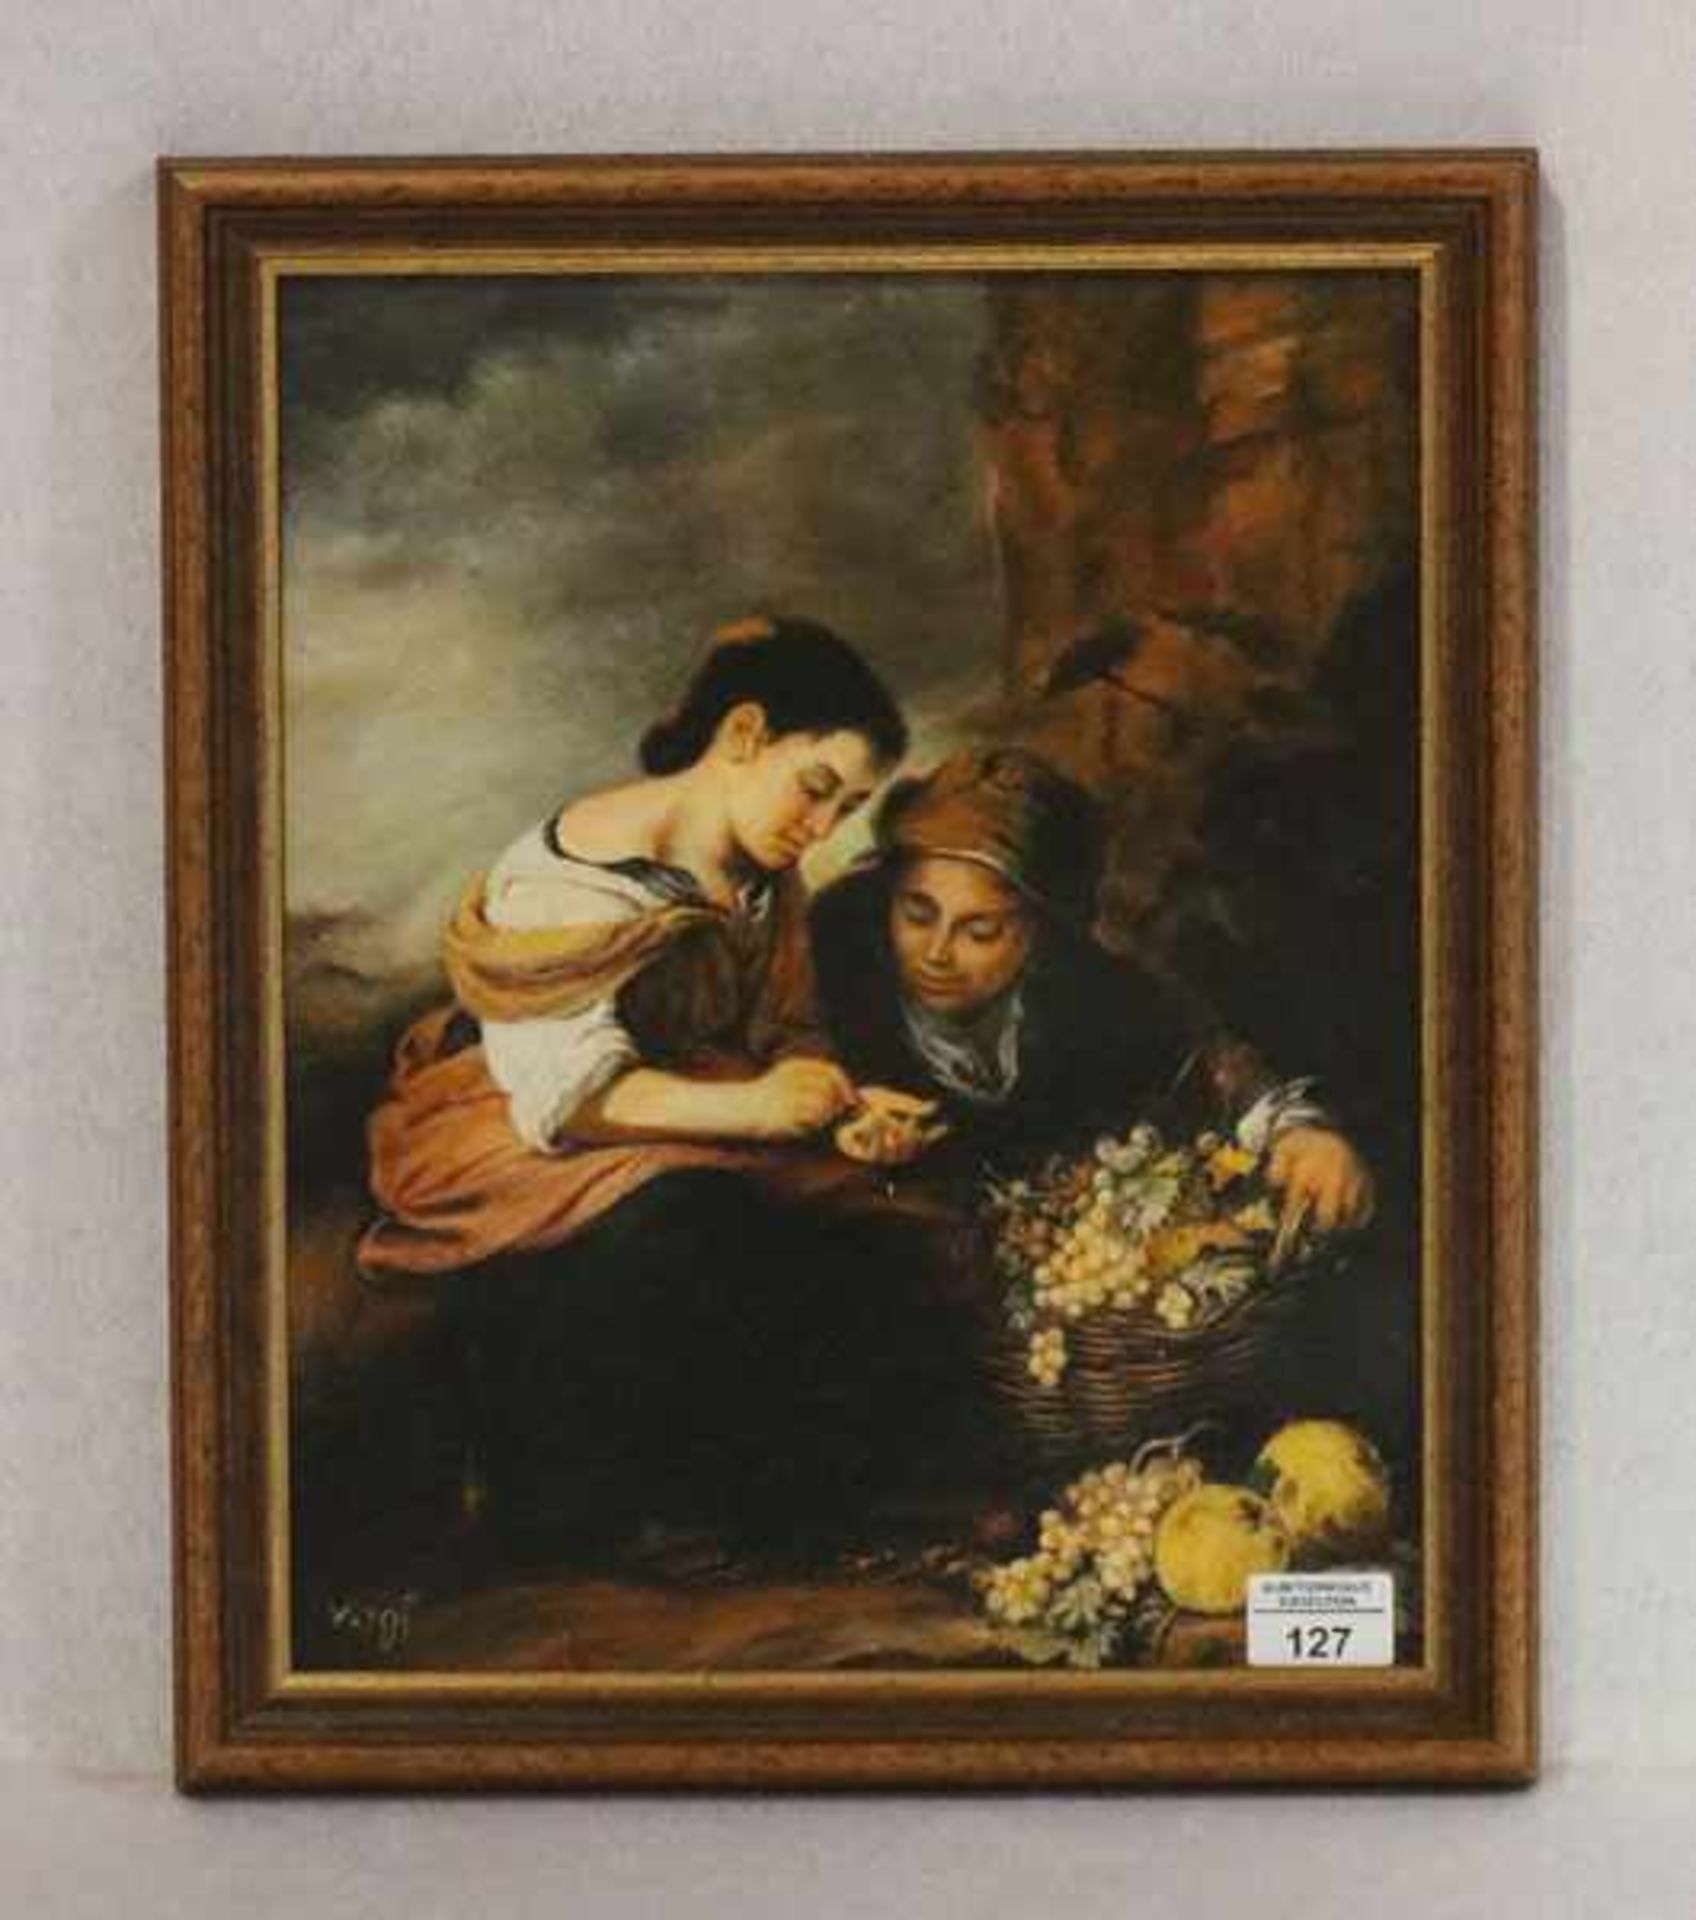 Gemälde ÖL/Malkarton 'Die kleine Obstverkäuferin' nach Murillo, signiert Vogt, Garmisch 1995,